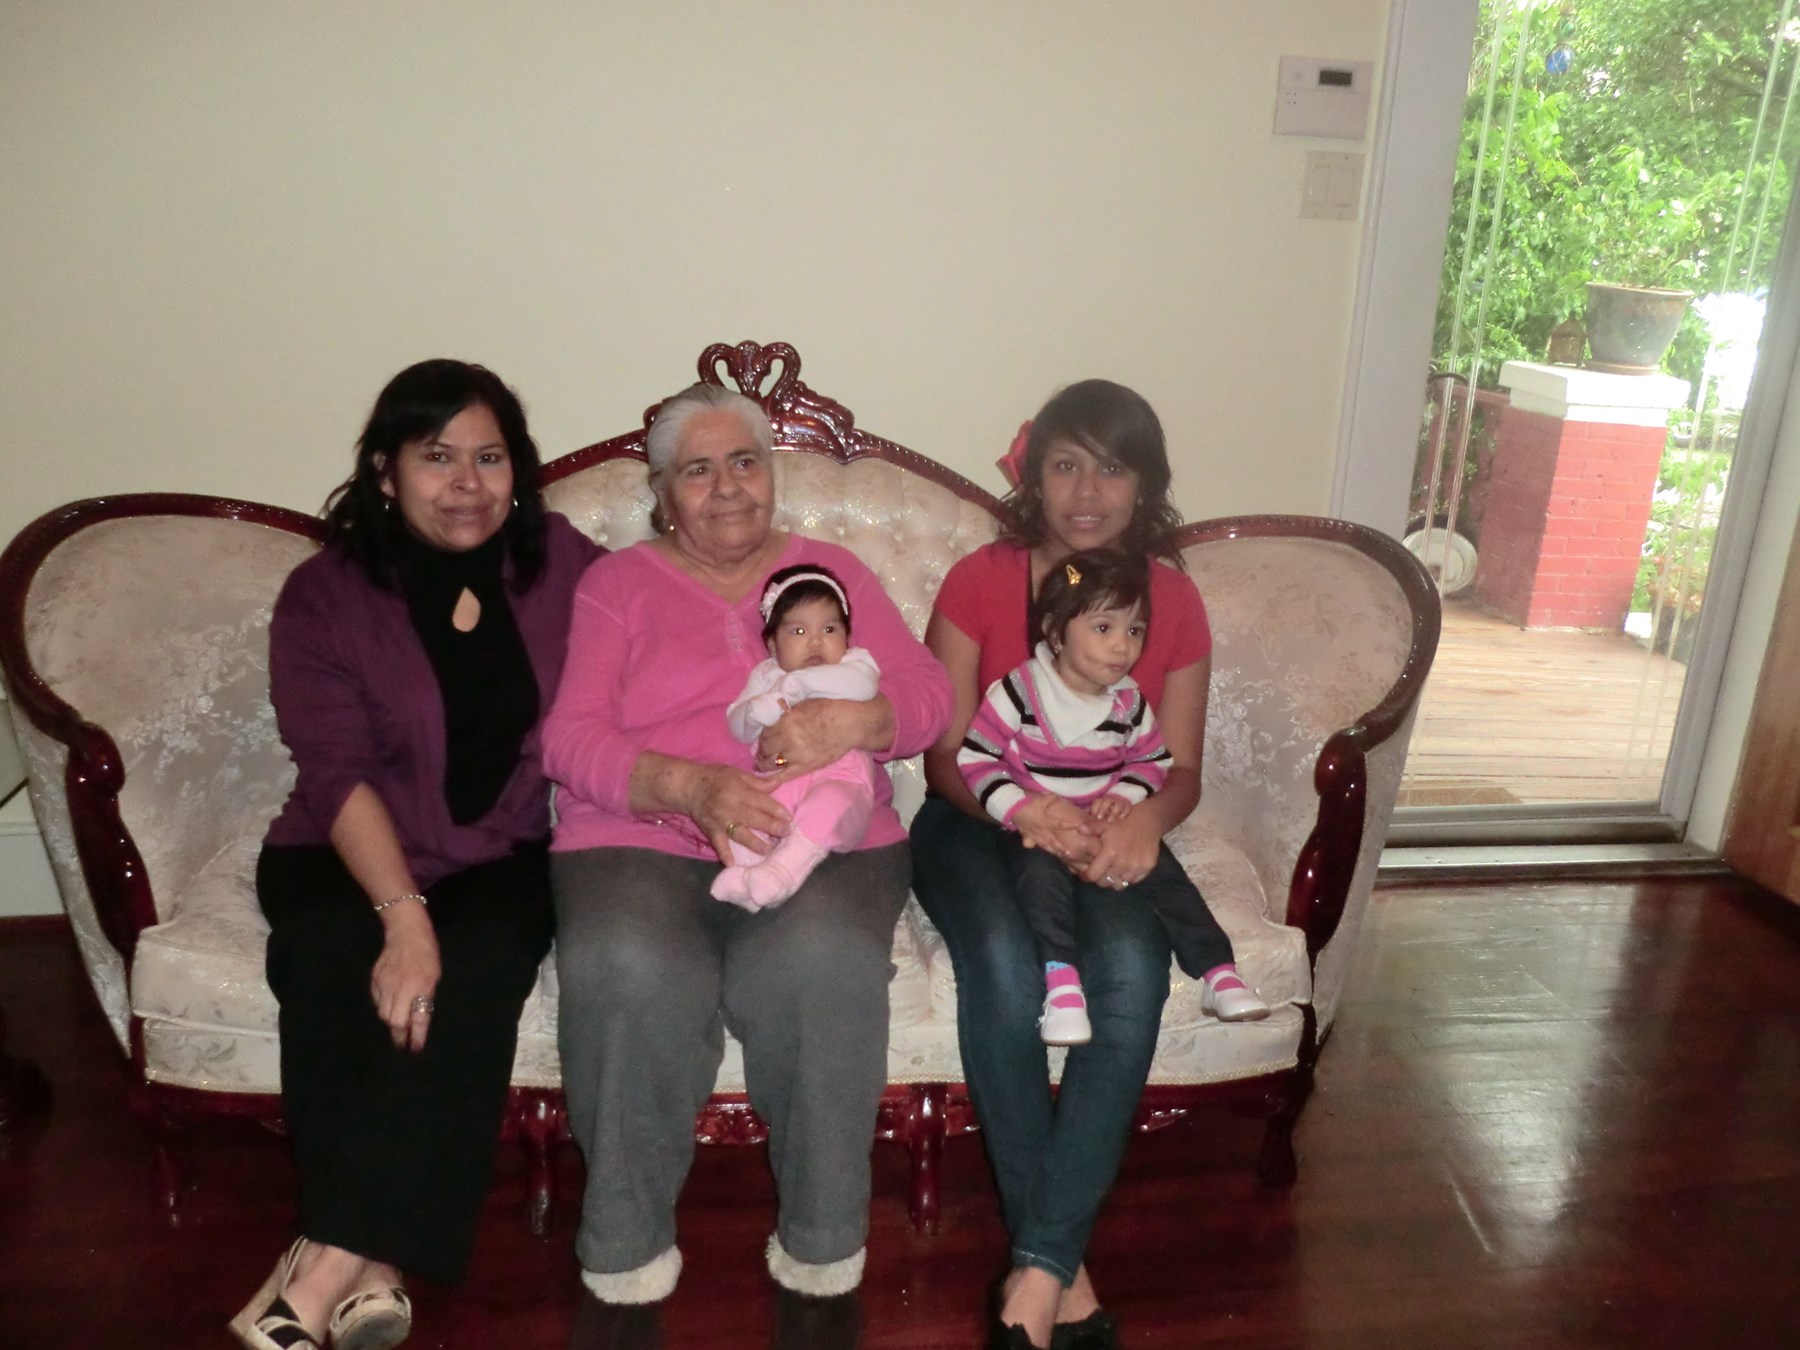 Obituary of Maria De Lourdes Padilla De Coronado - 02/11/2020 - From the Family